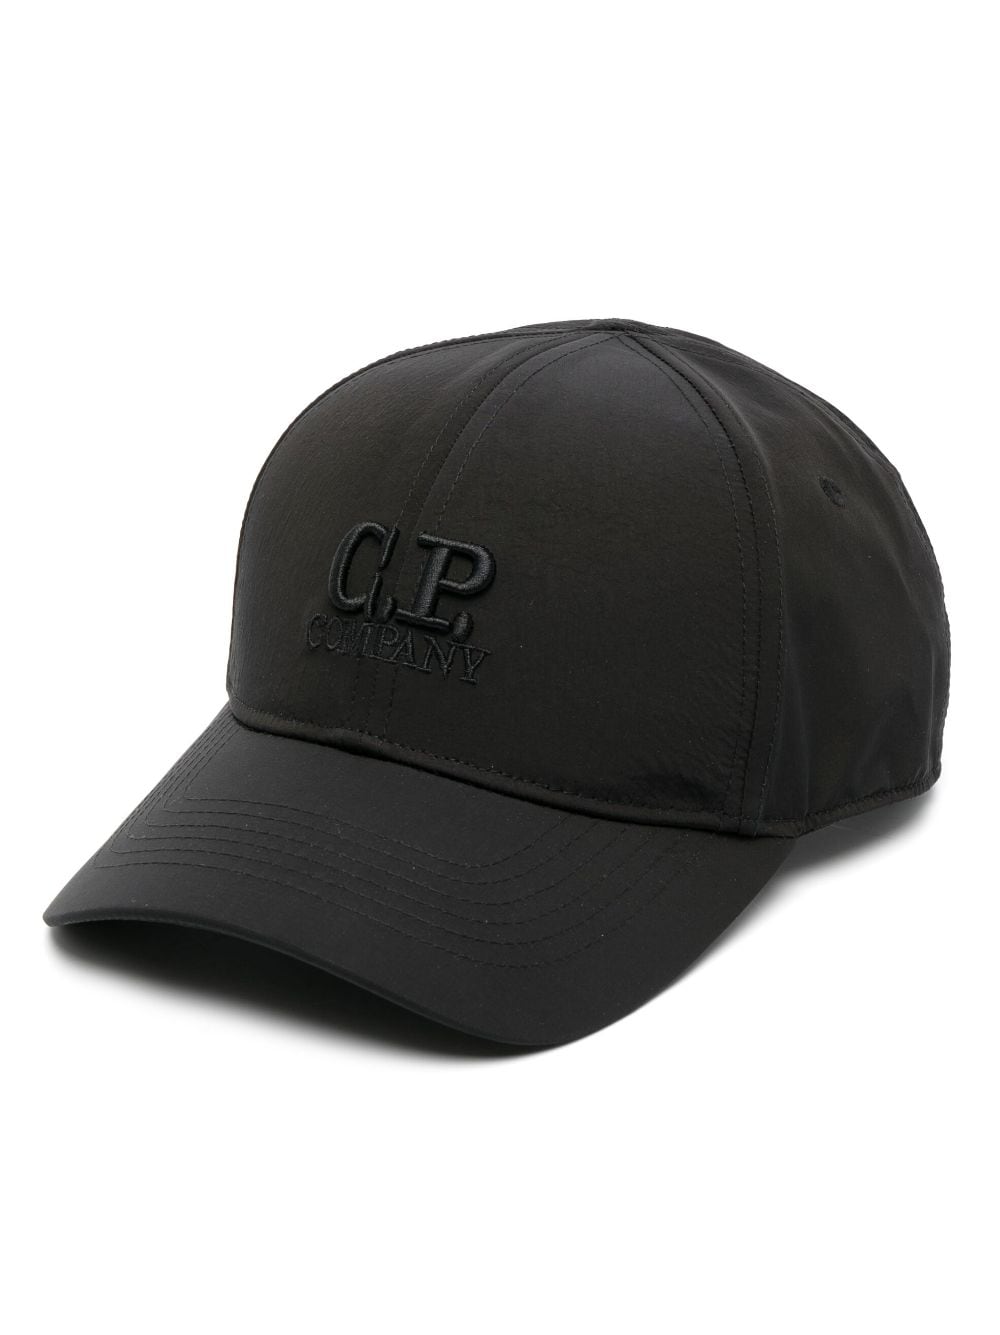 C.P Company Casquette Black Chrome-R à logo - Lothaire